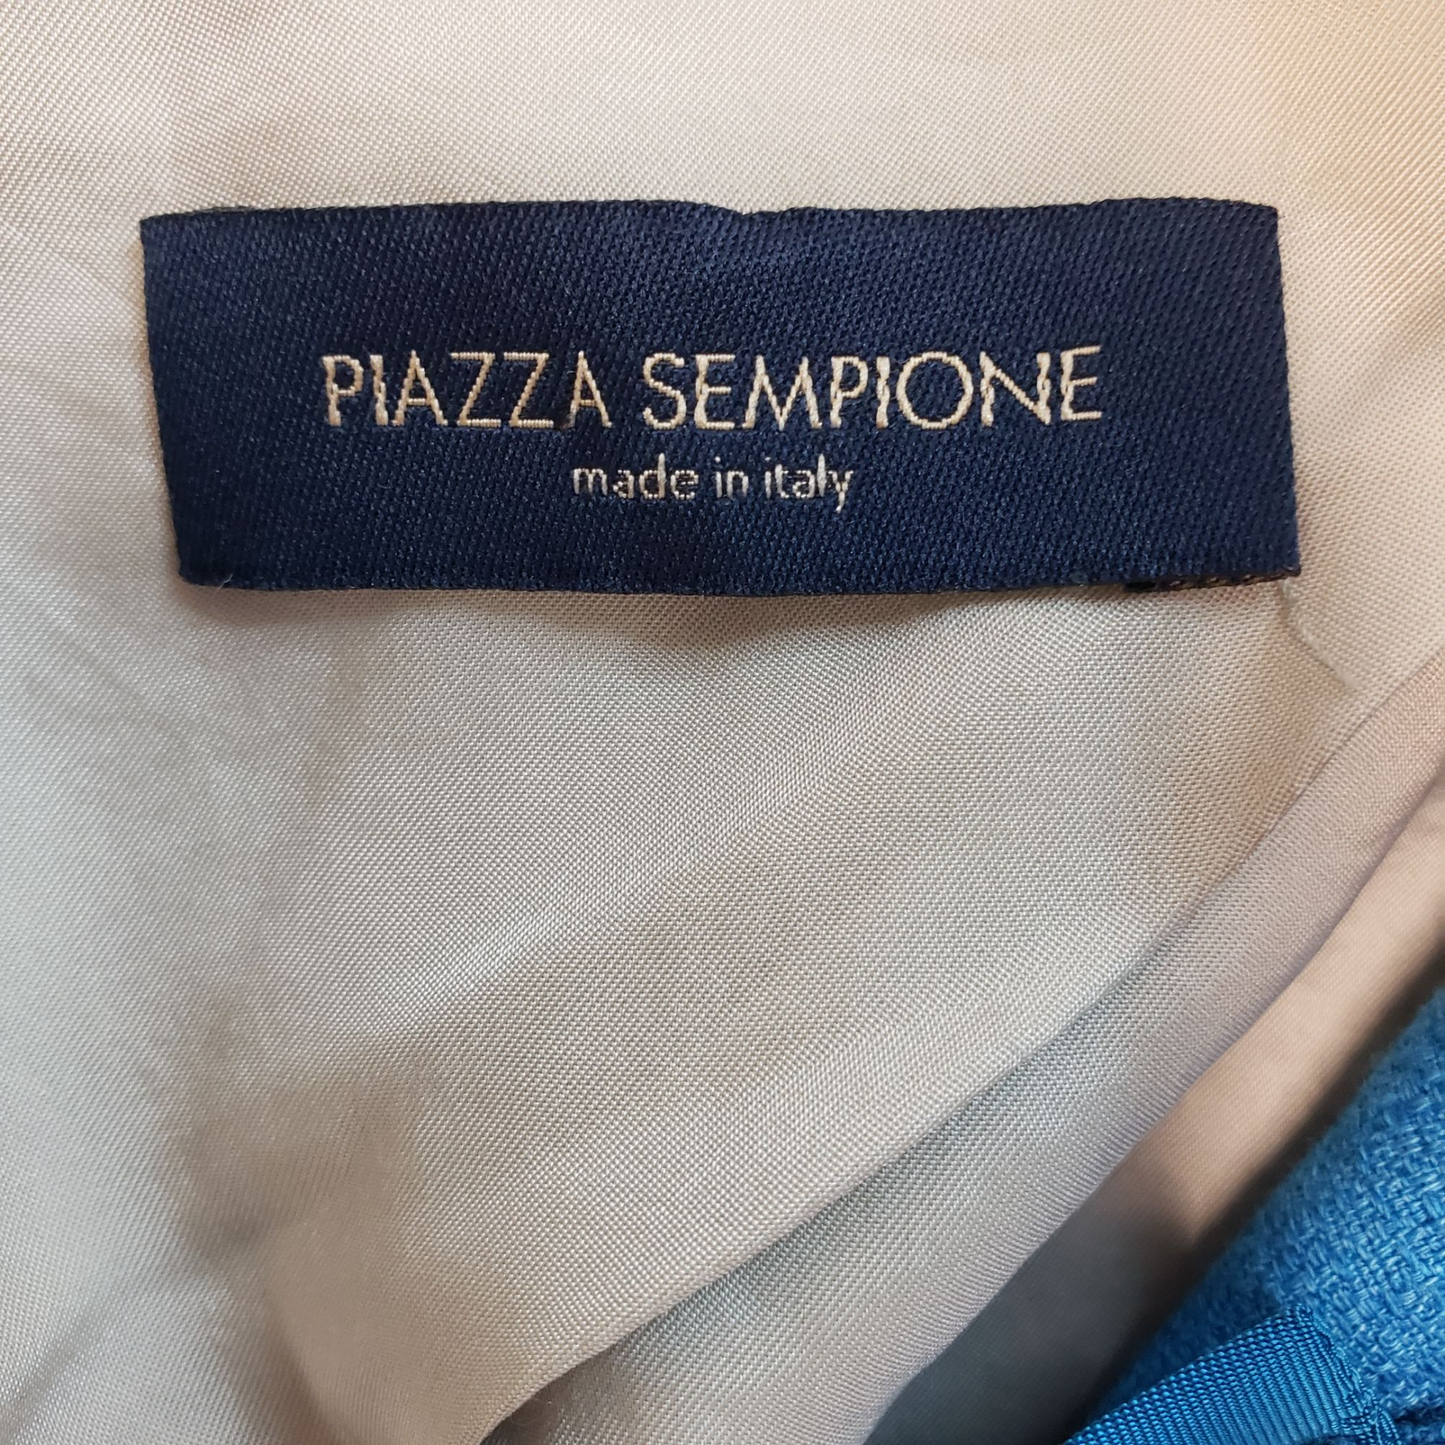 Piazza Sempione Linen Blend Blazer Size 46